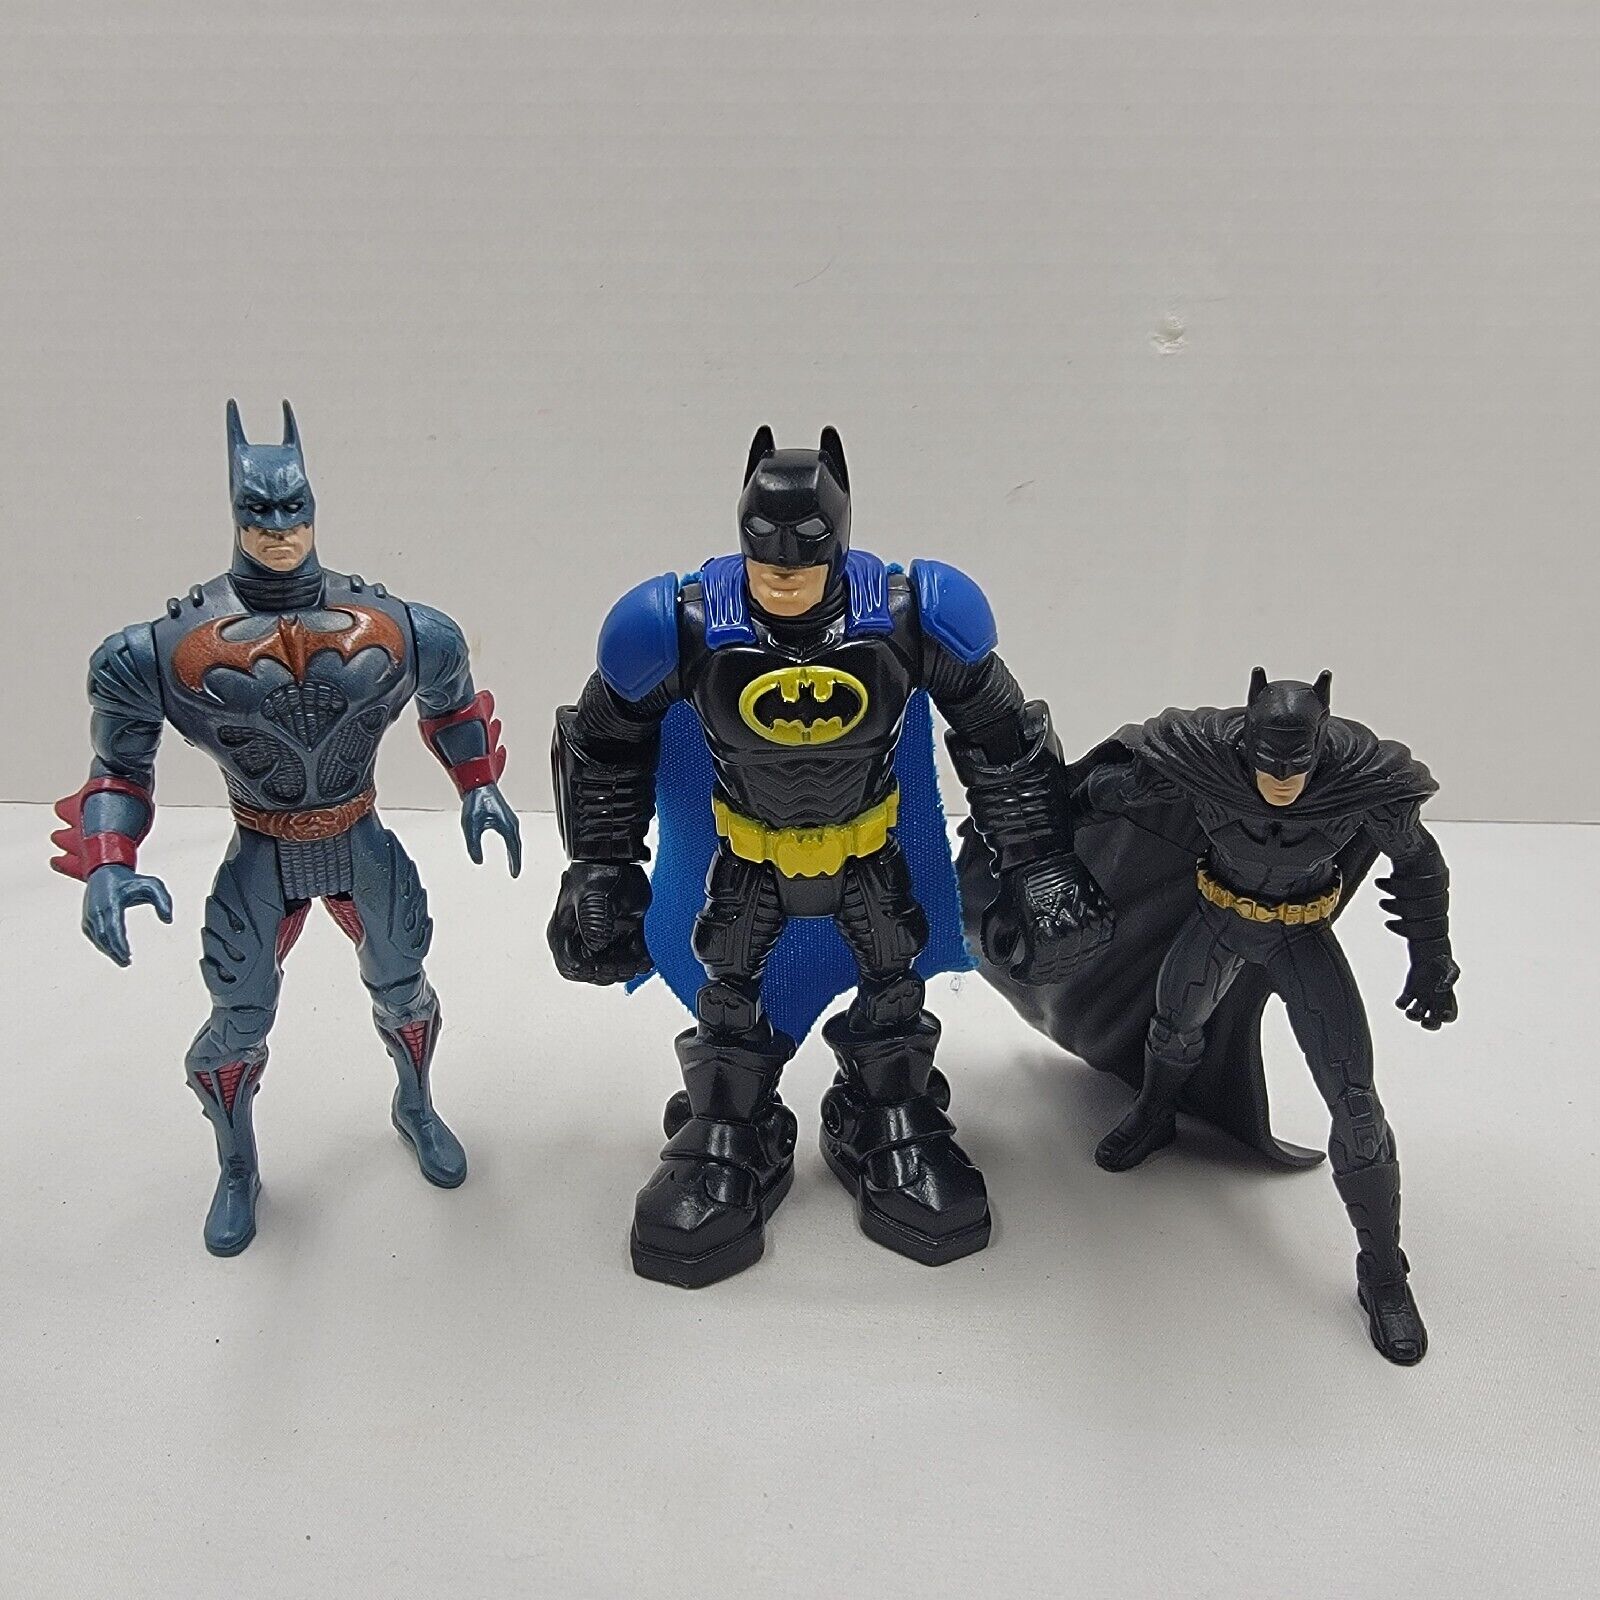 3 DC Comics Batman Hasbro Mattel Batman Set Lot Action Figures Plastic Imaginext